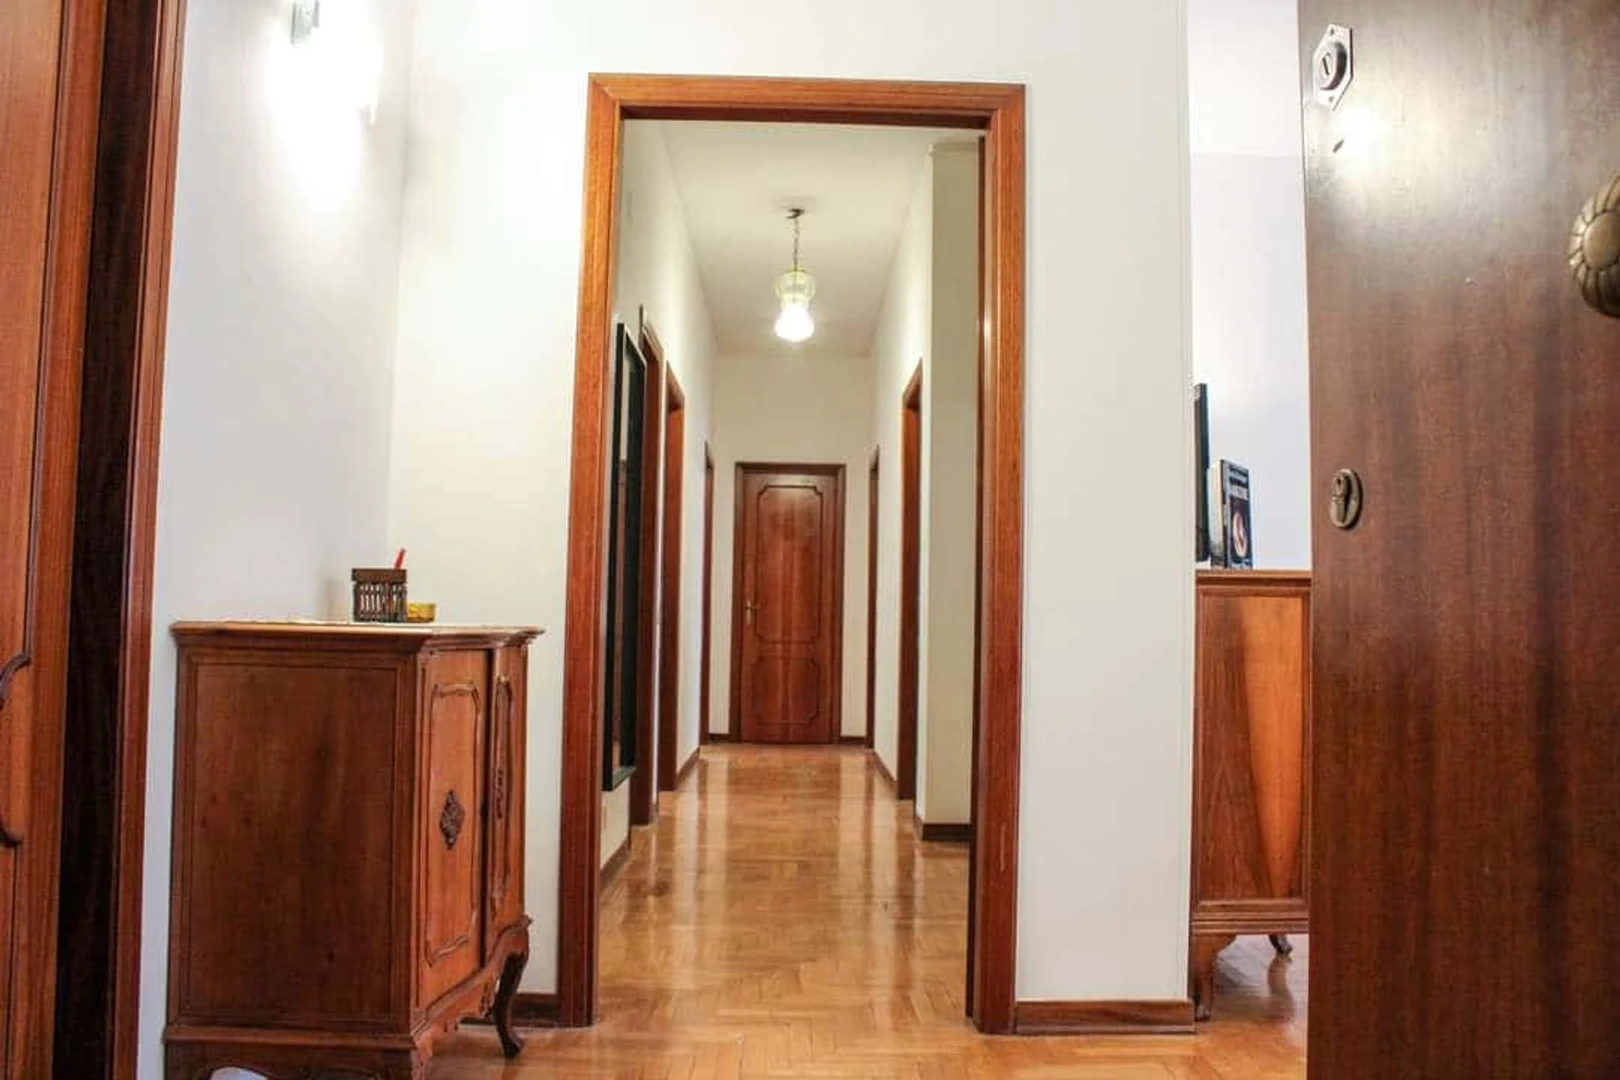 Alquiler de habitación en piso compartido en Siena